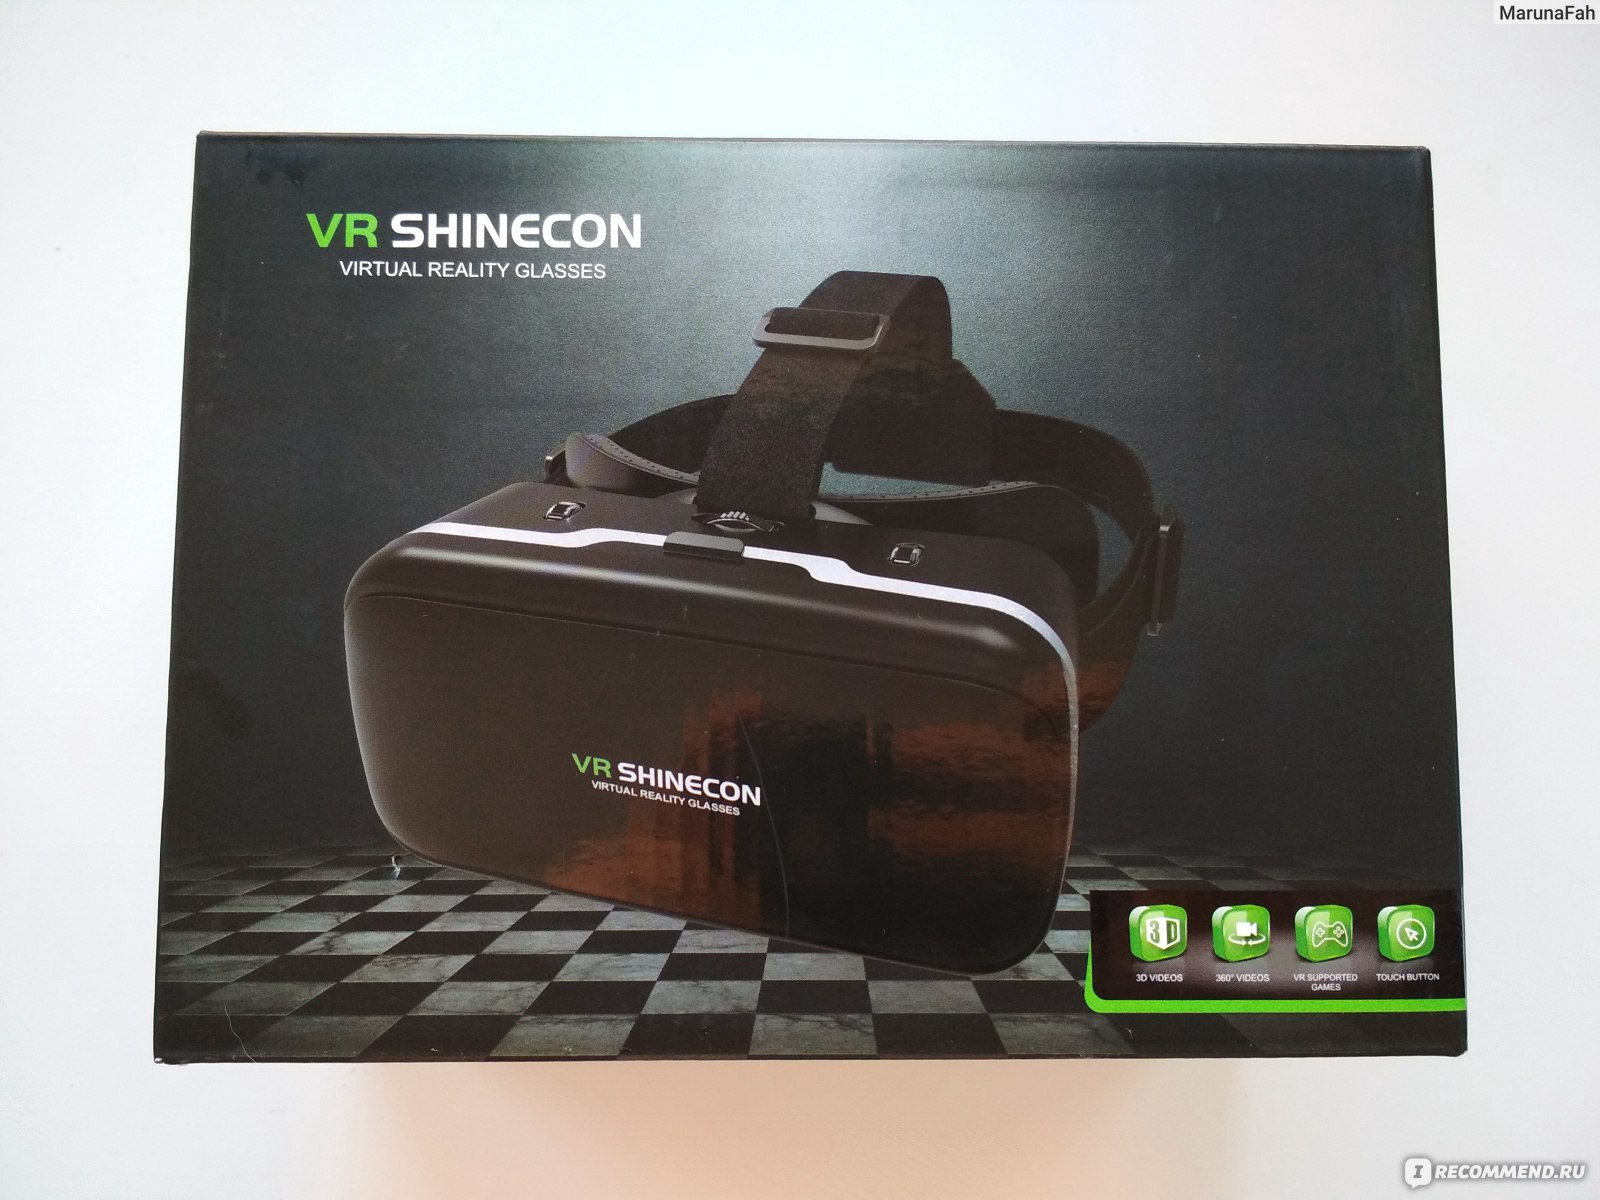 Купить очки днс. Очки виртуальной реальности VR Shinecon. Очки виртуальной реальности VR Shinecon g15e. VR очки ДНС. VR Shinecon 6.0 коробка.